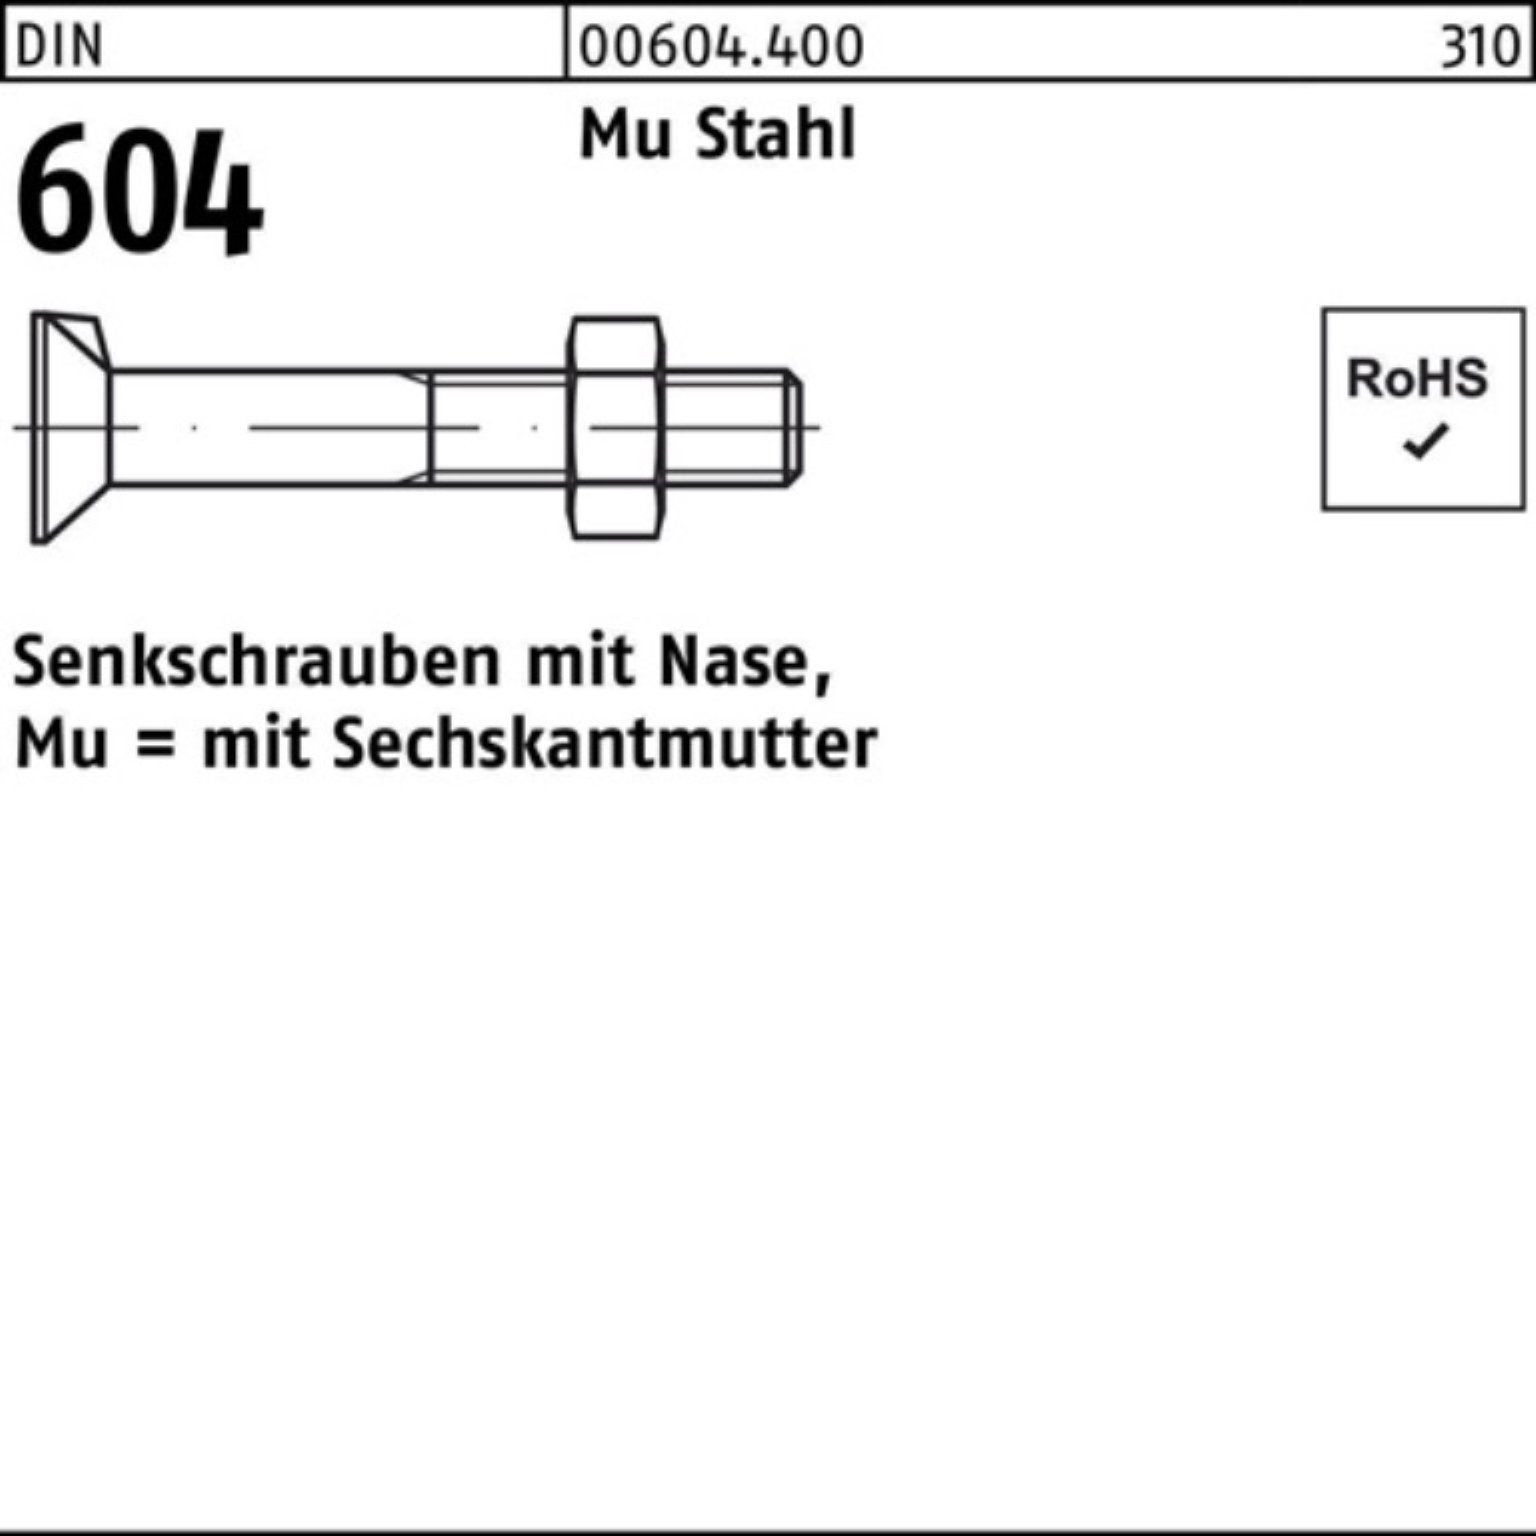 4.6 604 Senkschraube Pack 90 M24x Reyher Stahl 1 Nase/6-ktmutter DIN 100er Mu Senkschraube